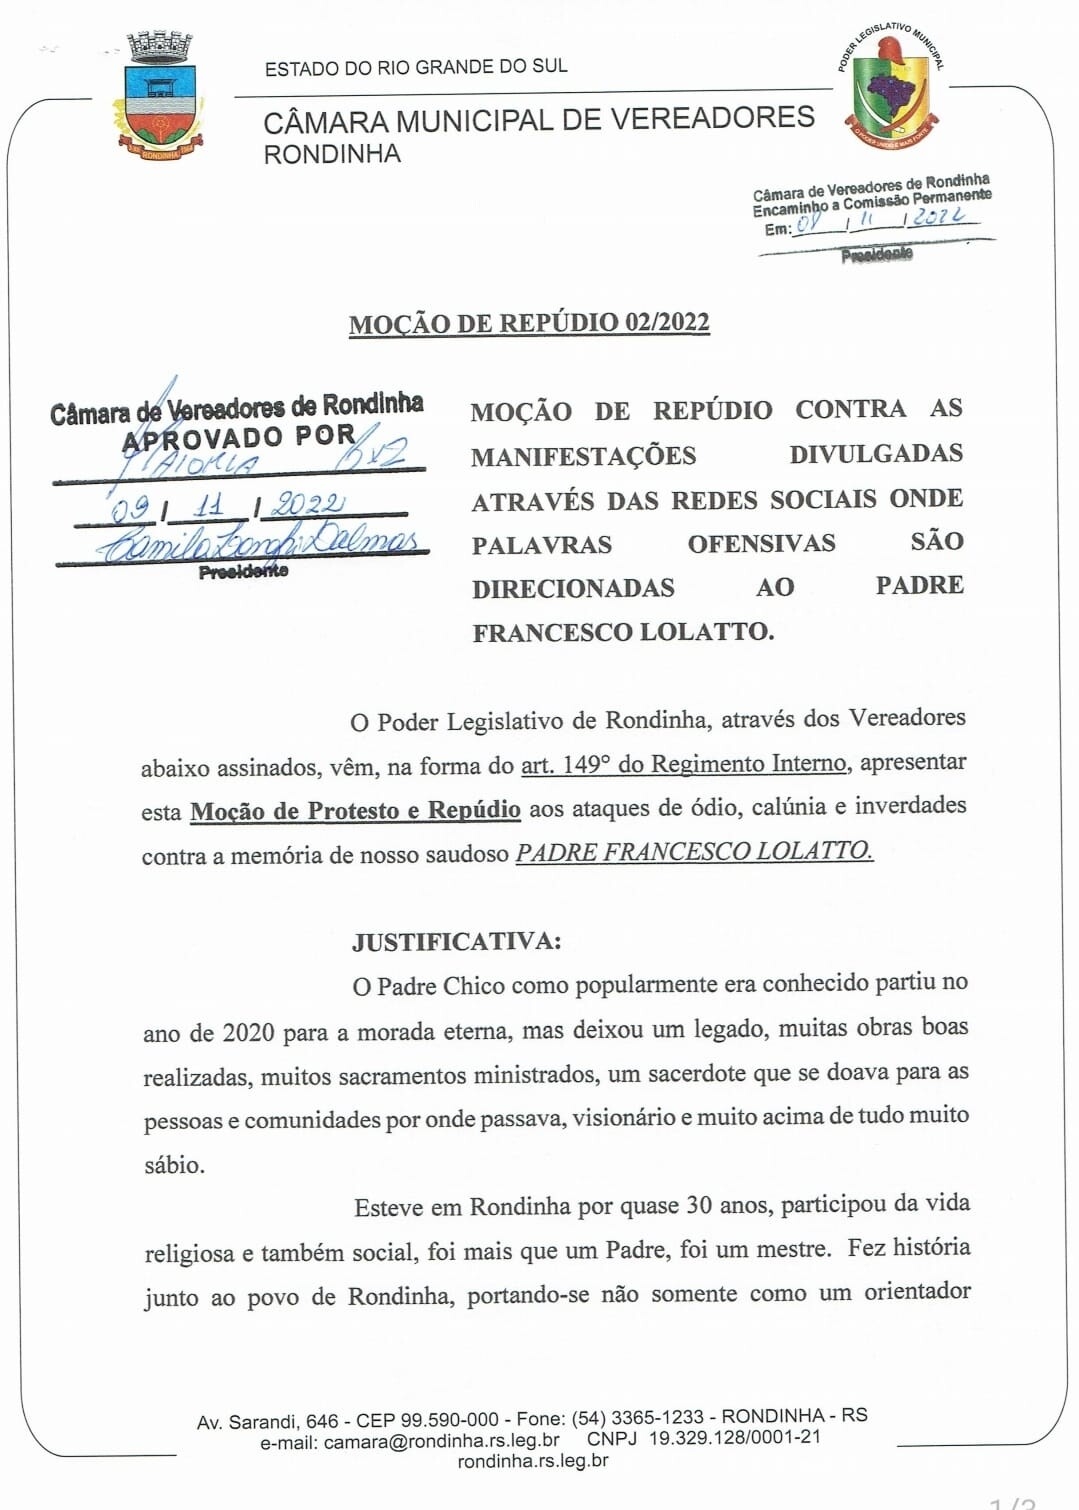 Poder Legislativo Municipal de Rondinha aprova moção de repúdio